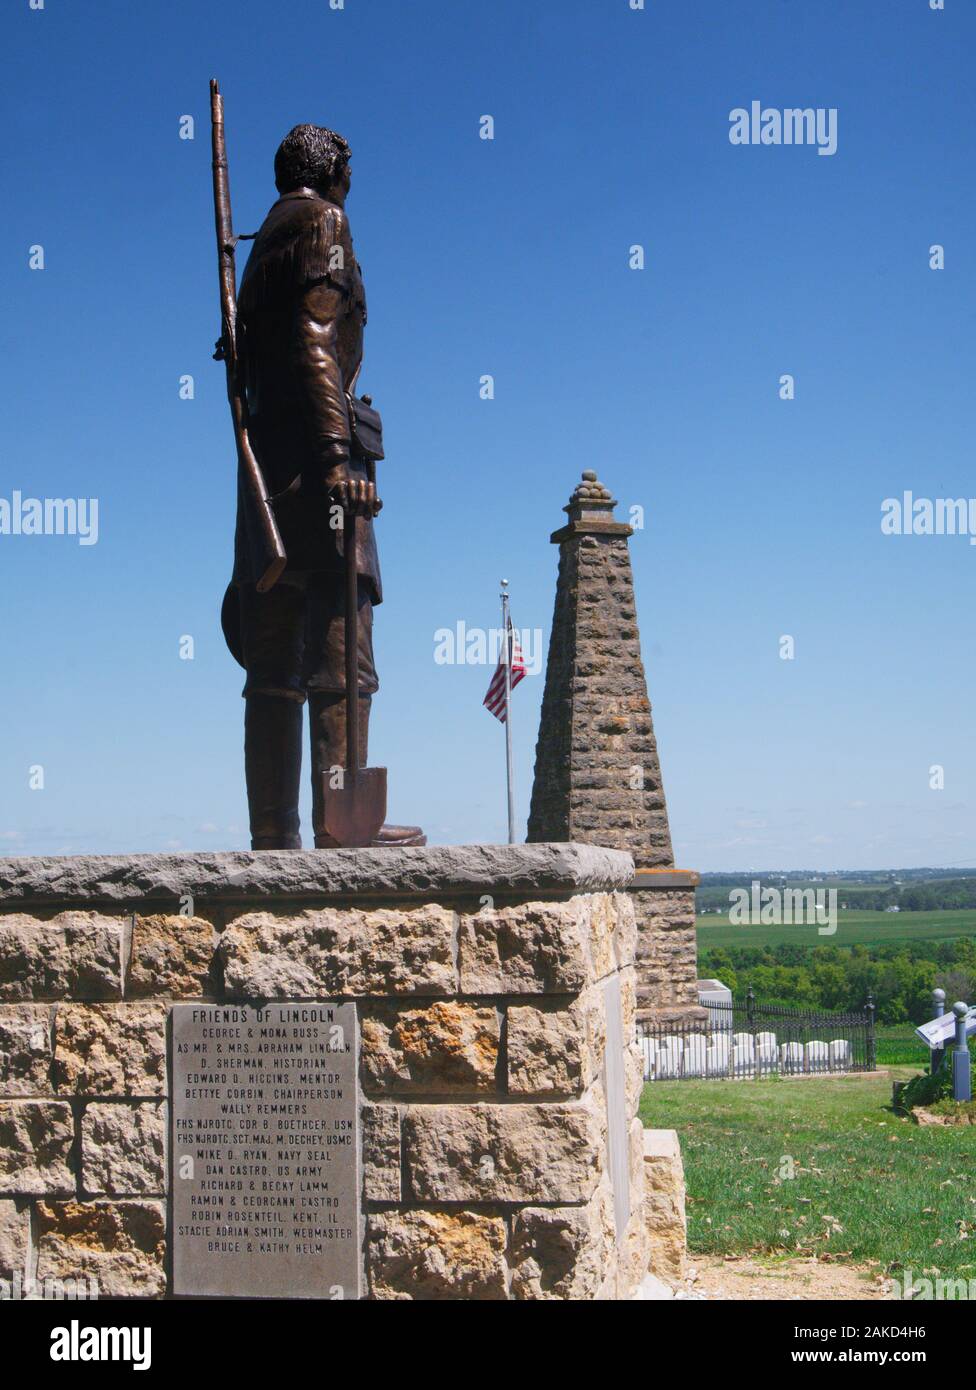 Estatua de Abraham Lincoin en el monumento de la Guerra Blackhawk en Kent, Illinois, EE.UU. Conmemorando una batalla entre una milicia de Illinois y nativos americanos. Foto de stock